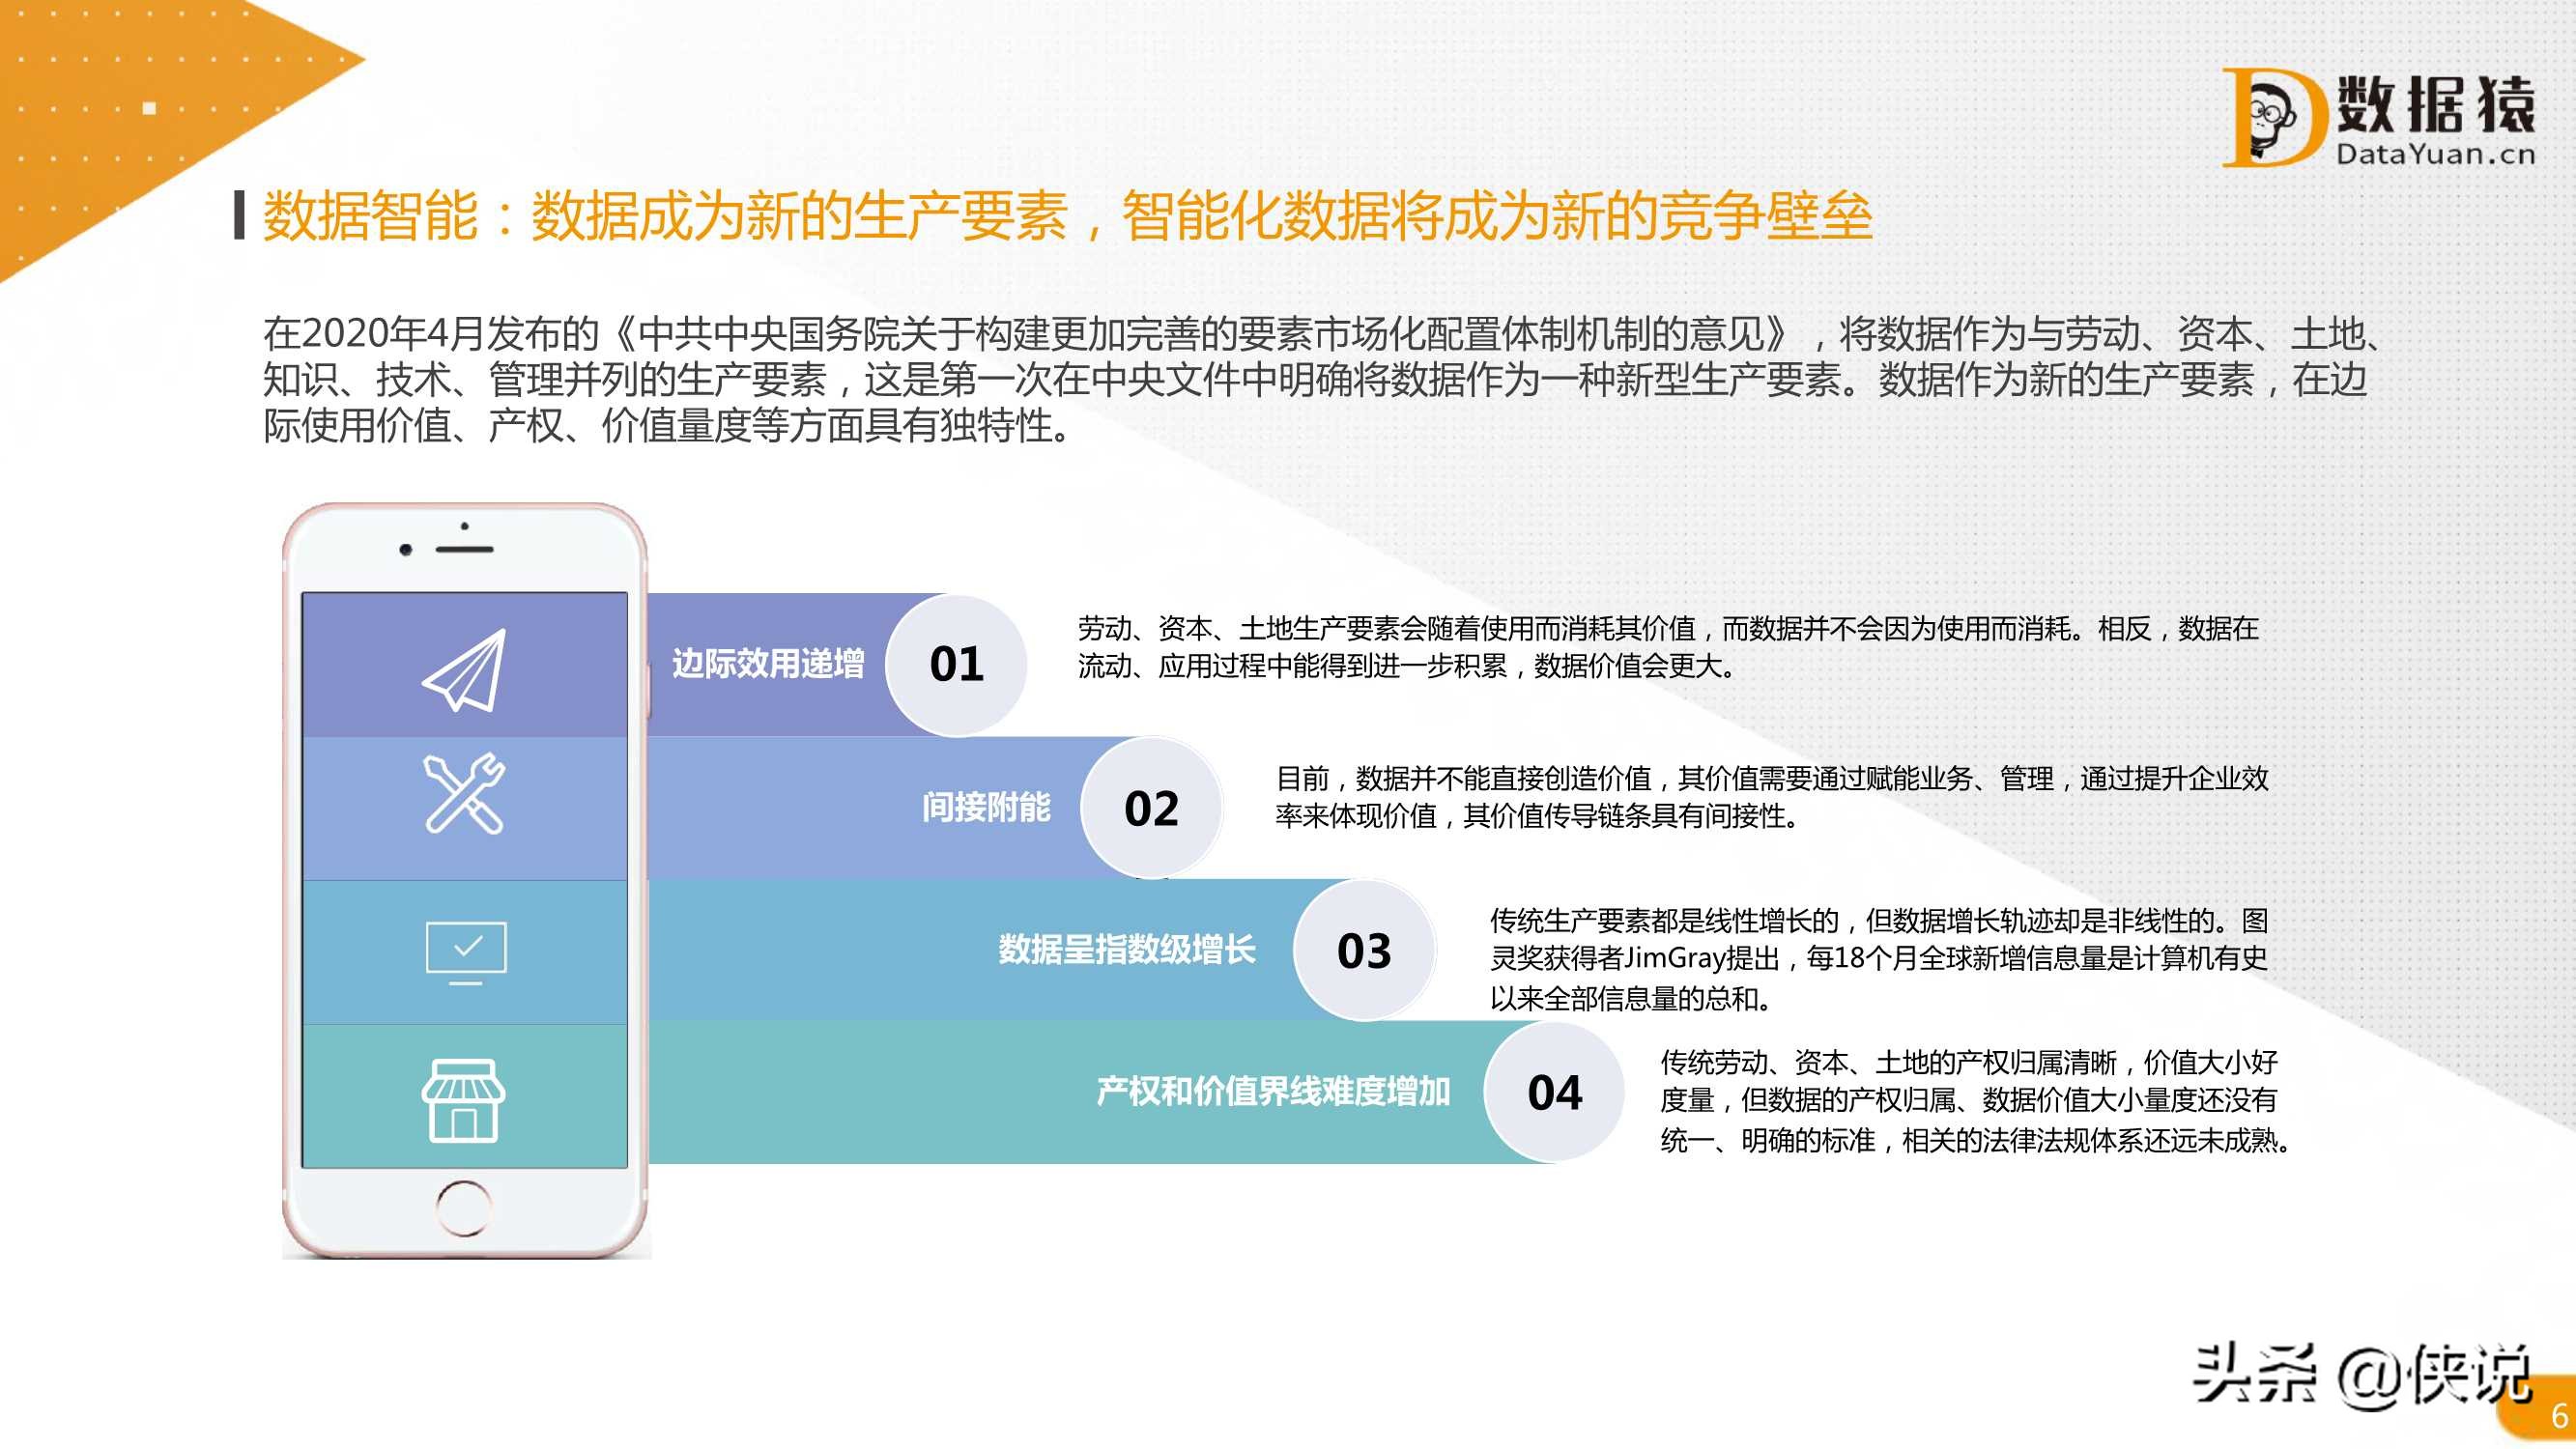 2021中国数据智能产业发展研究报告